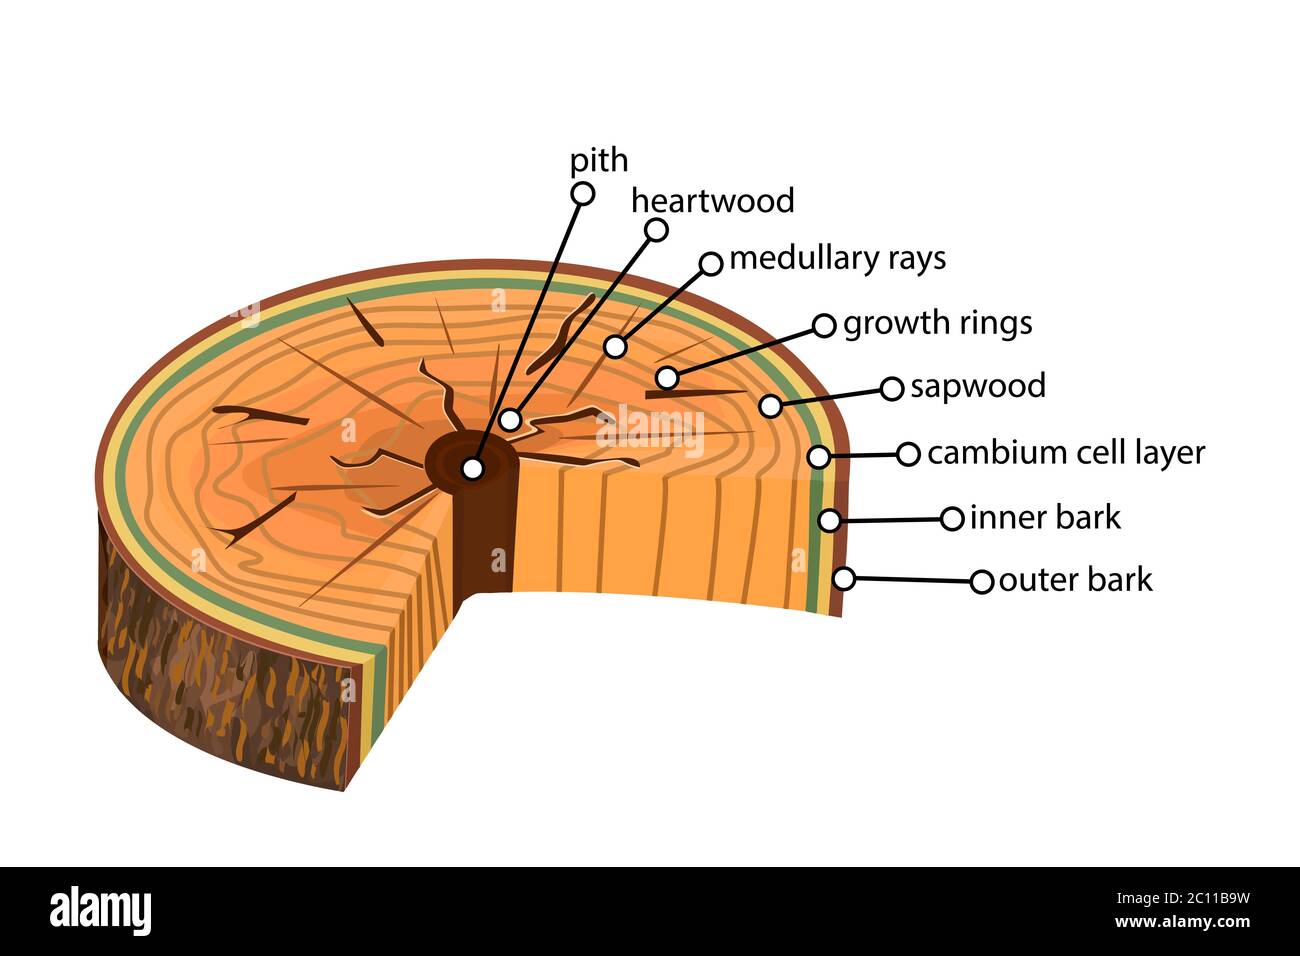 Anatomie eines Baumes. Struktur der Schicht der Baumebenen im Querschnitt. Strukturbaumansicht. Querschnitt von holzigen Stielen. Stock-Vektor Stock Vektor